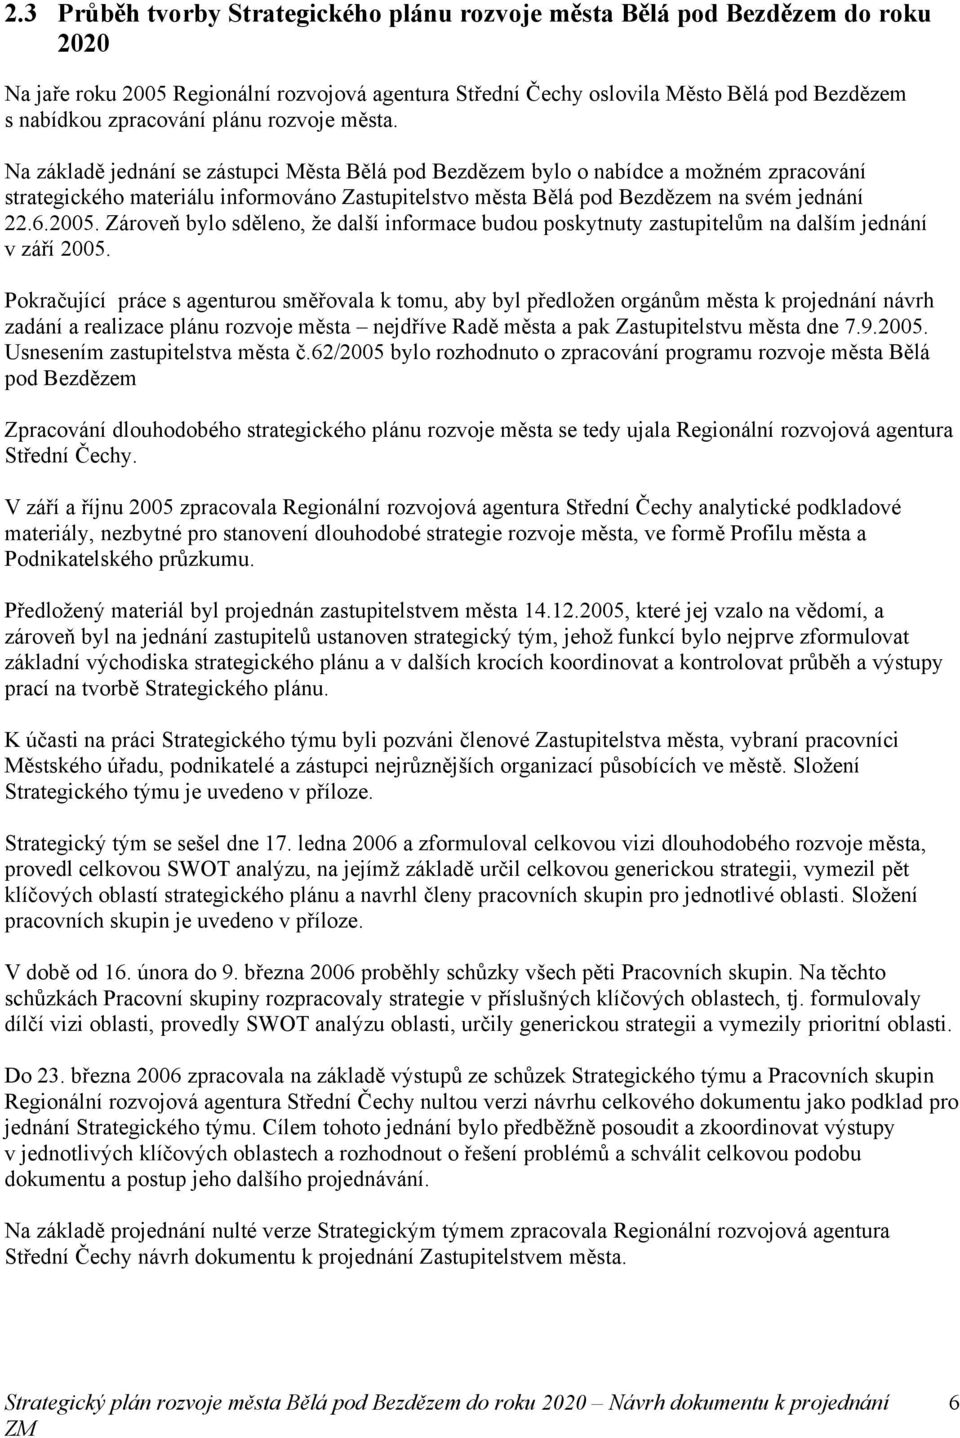 Na základě jednání se zástupci Města Bělá pod Bezdězem bylo o nabídce a možném zpracování strategického materiálu informováno Zastupitelstvo města Bělá pod Bezdězem na svém jednání 22.6.2005.